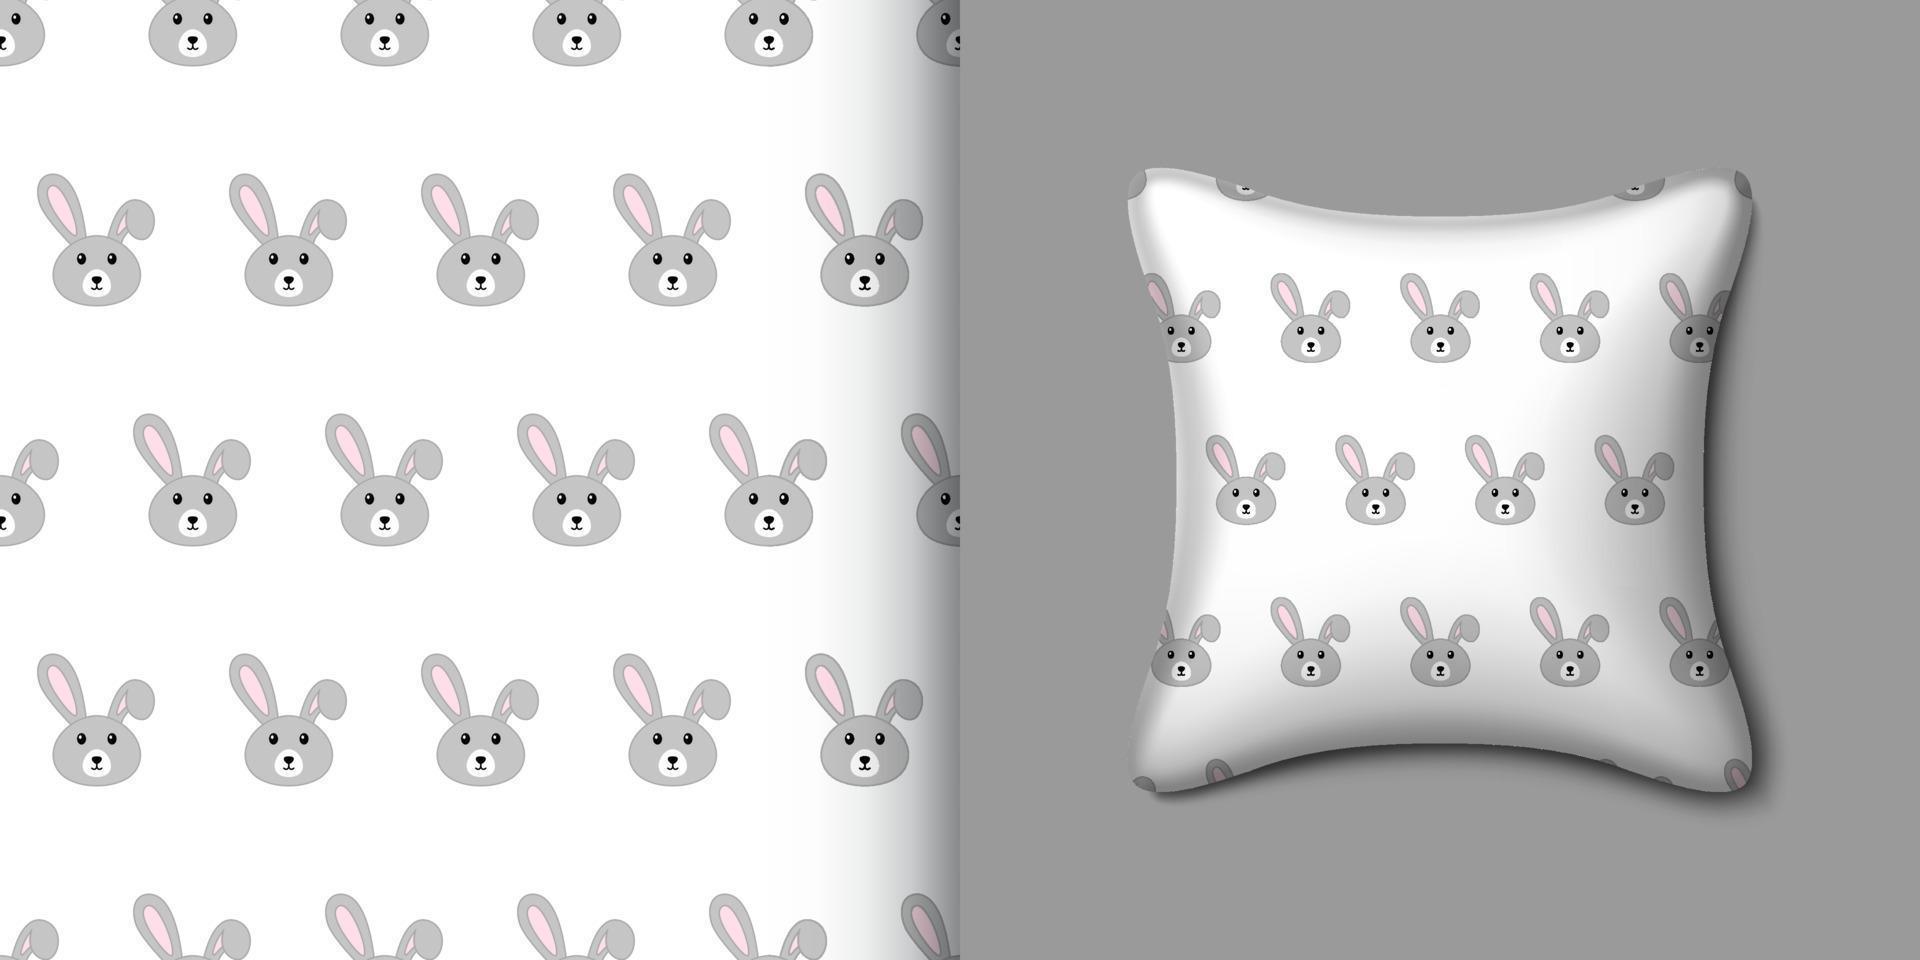 conejo de patrones sin fisuras con almohada. ilustración vectorial vector